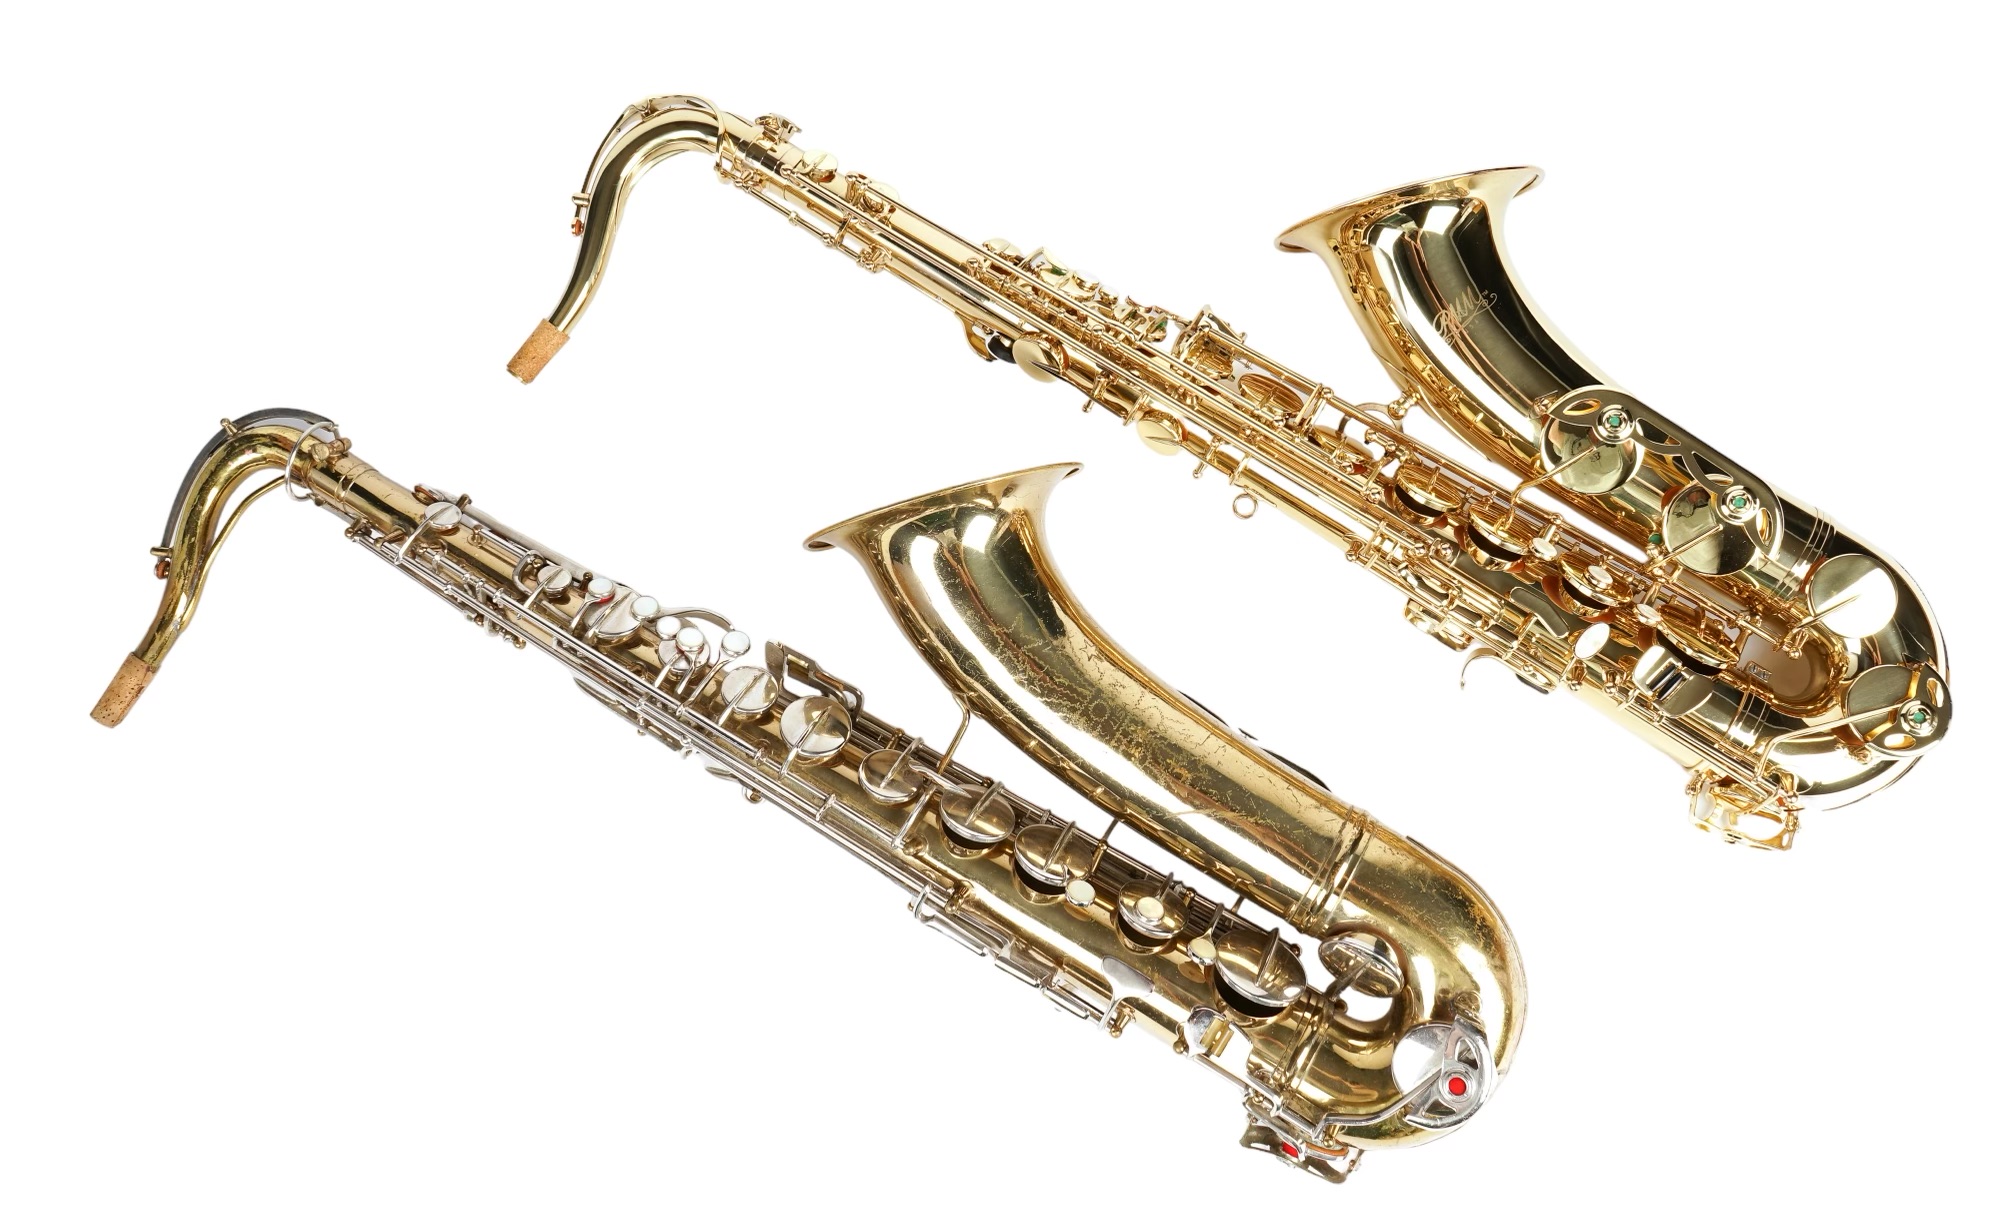  2 Tenor saxophones c o RMM USA 2e22b9